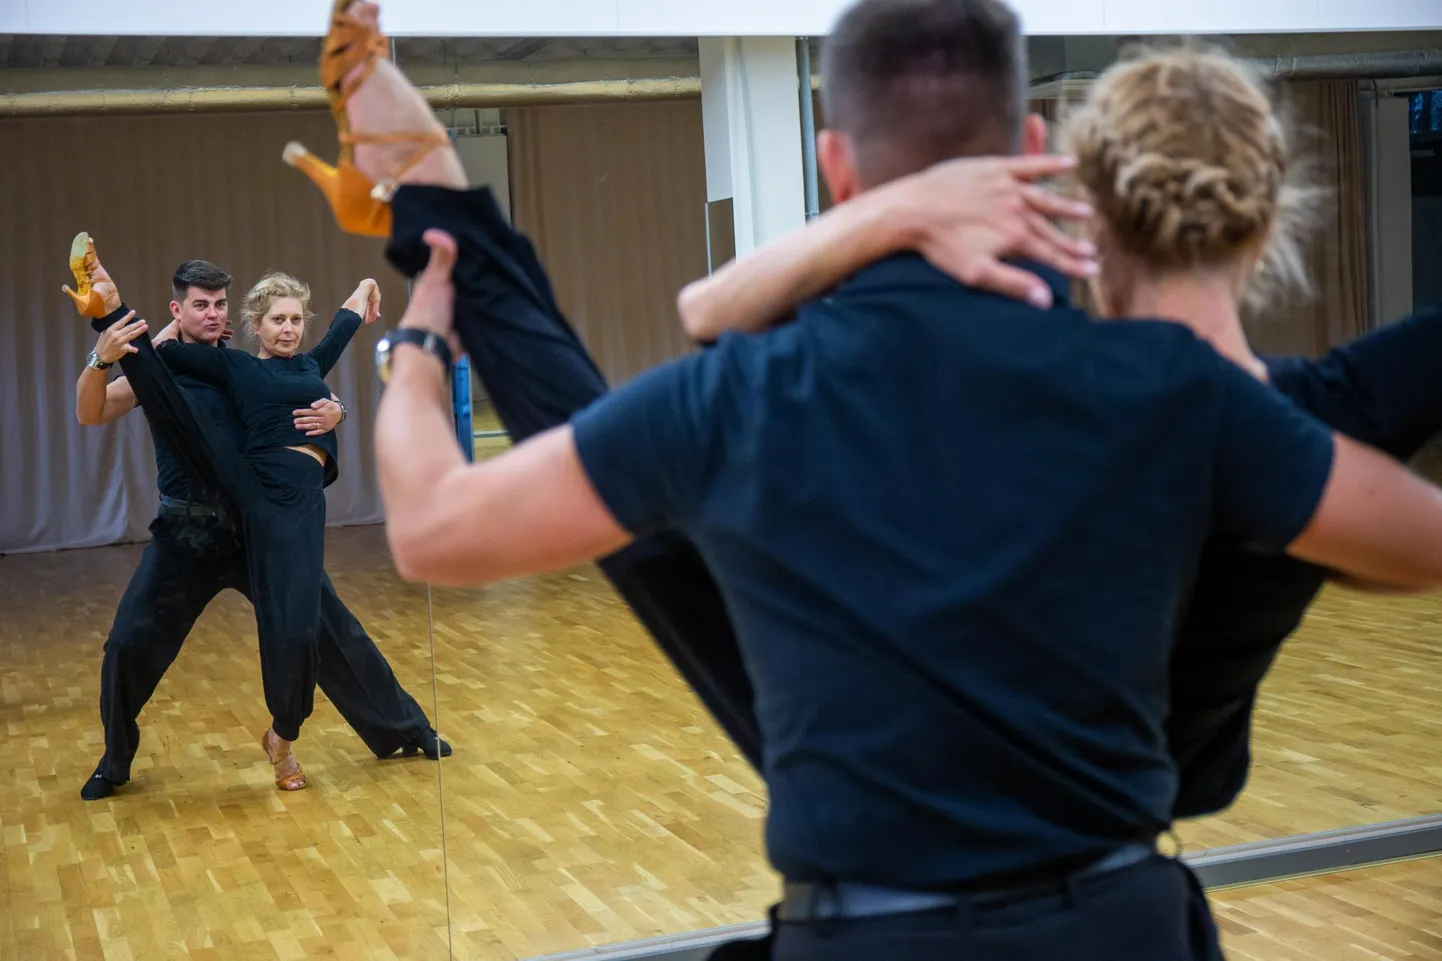 Kolmandas saates «Tantsud tähtedega» tantsib näitleja Ülle Lichtfeldt publikule isikliku loo. Kuna tema treener Marko Mehine ja tantsukool Respect asuvad Tartus, leiab suur osa treeninguid aset siin.